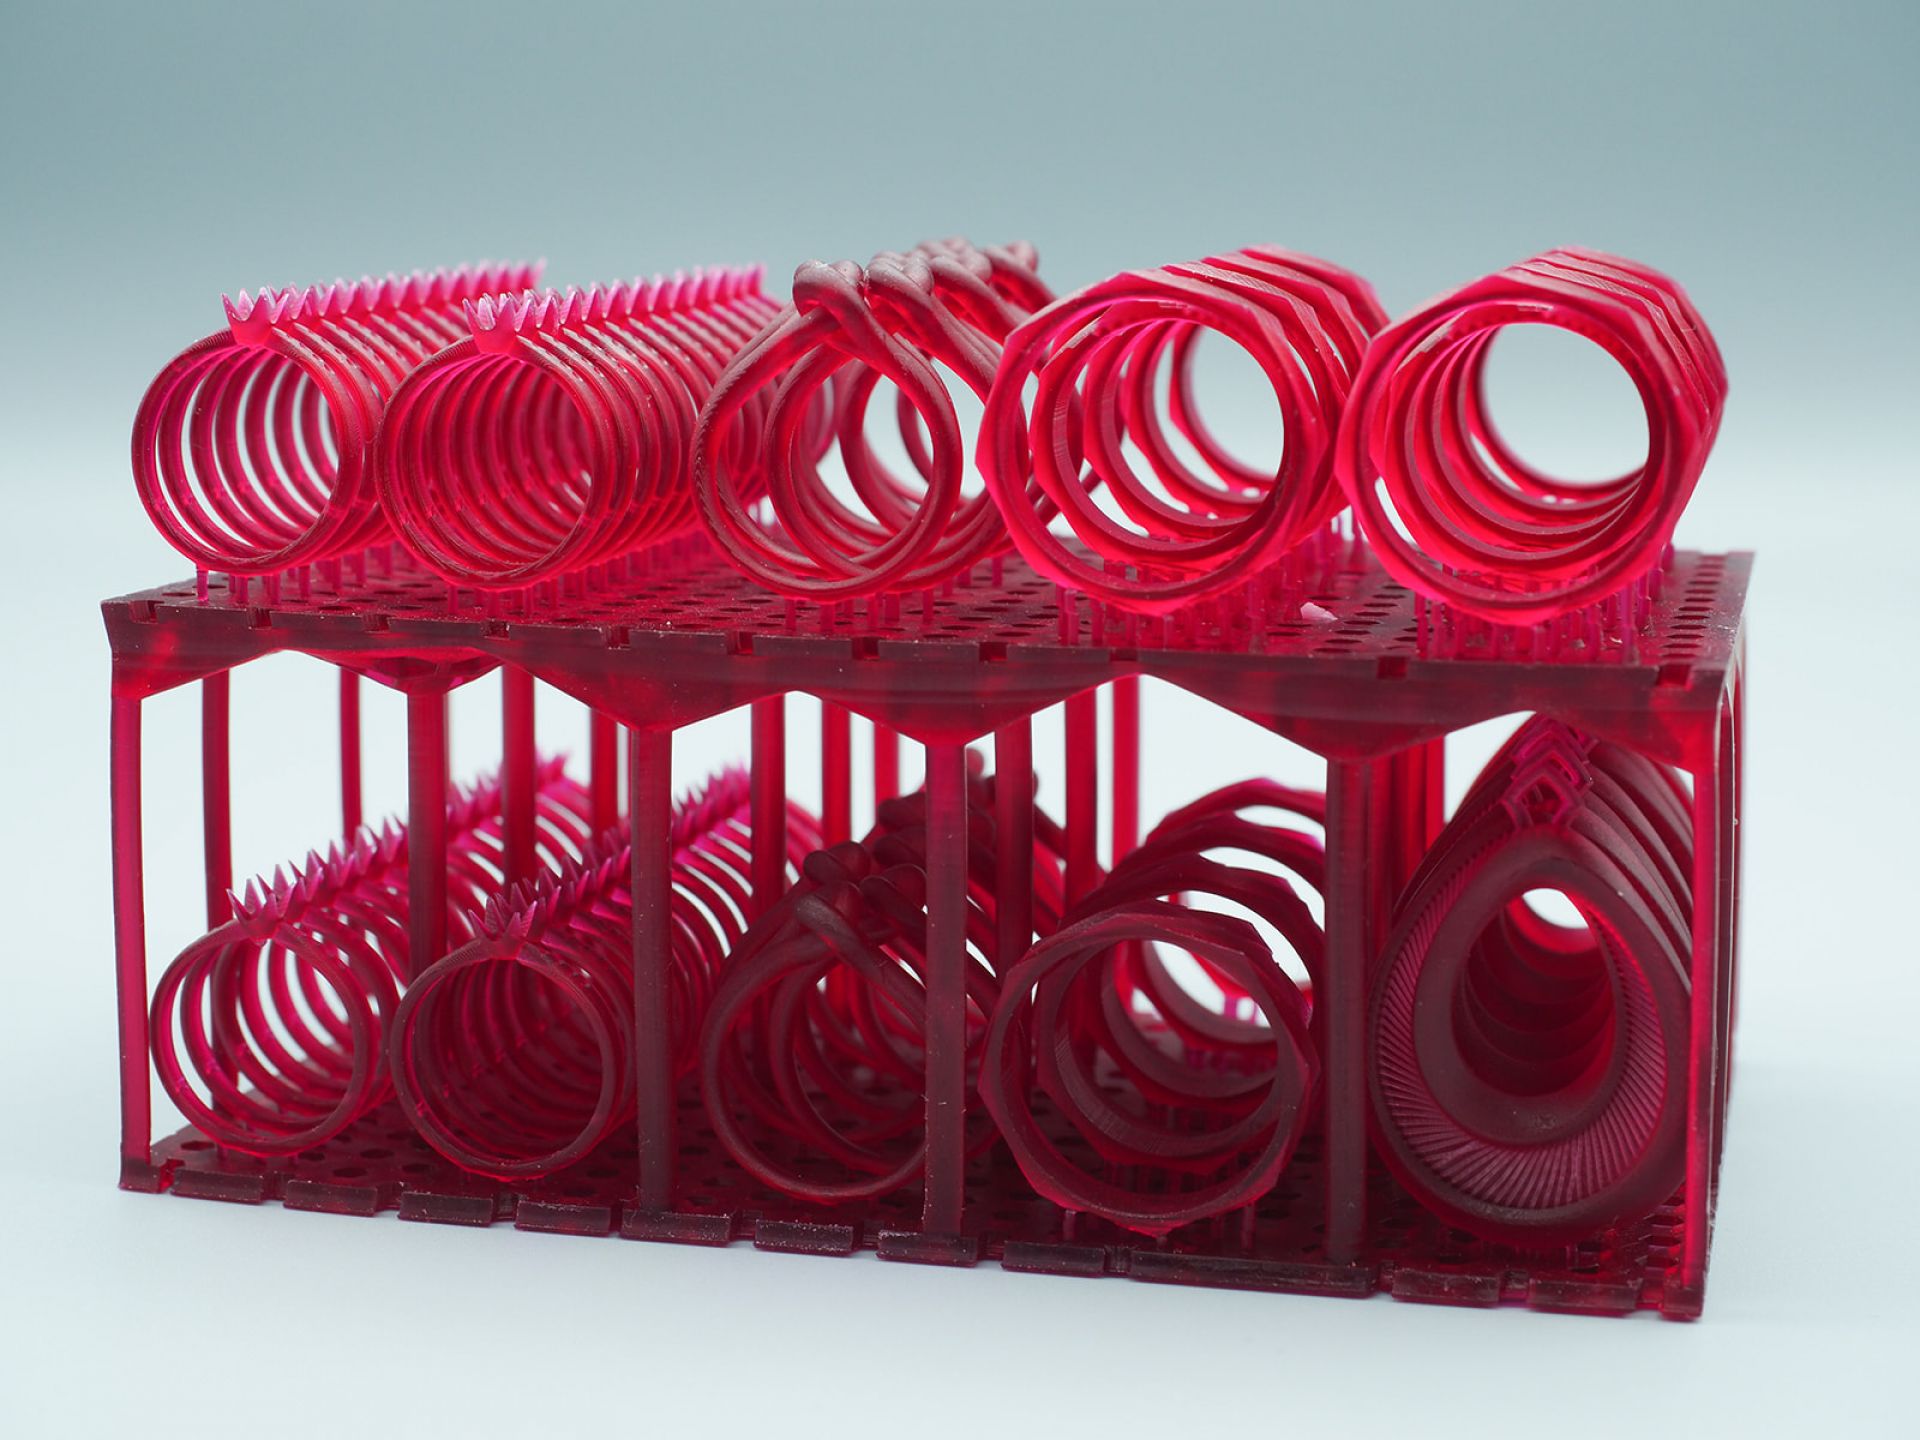 Gießbares Kunstharzmaterial für den 3D-Druck für Schmuck | TIKO-G Pro